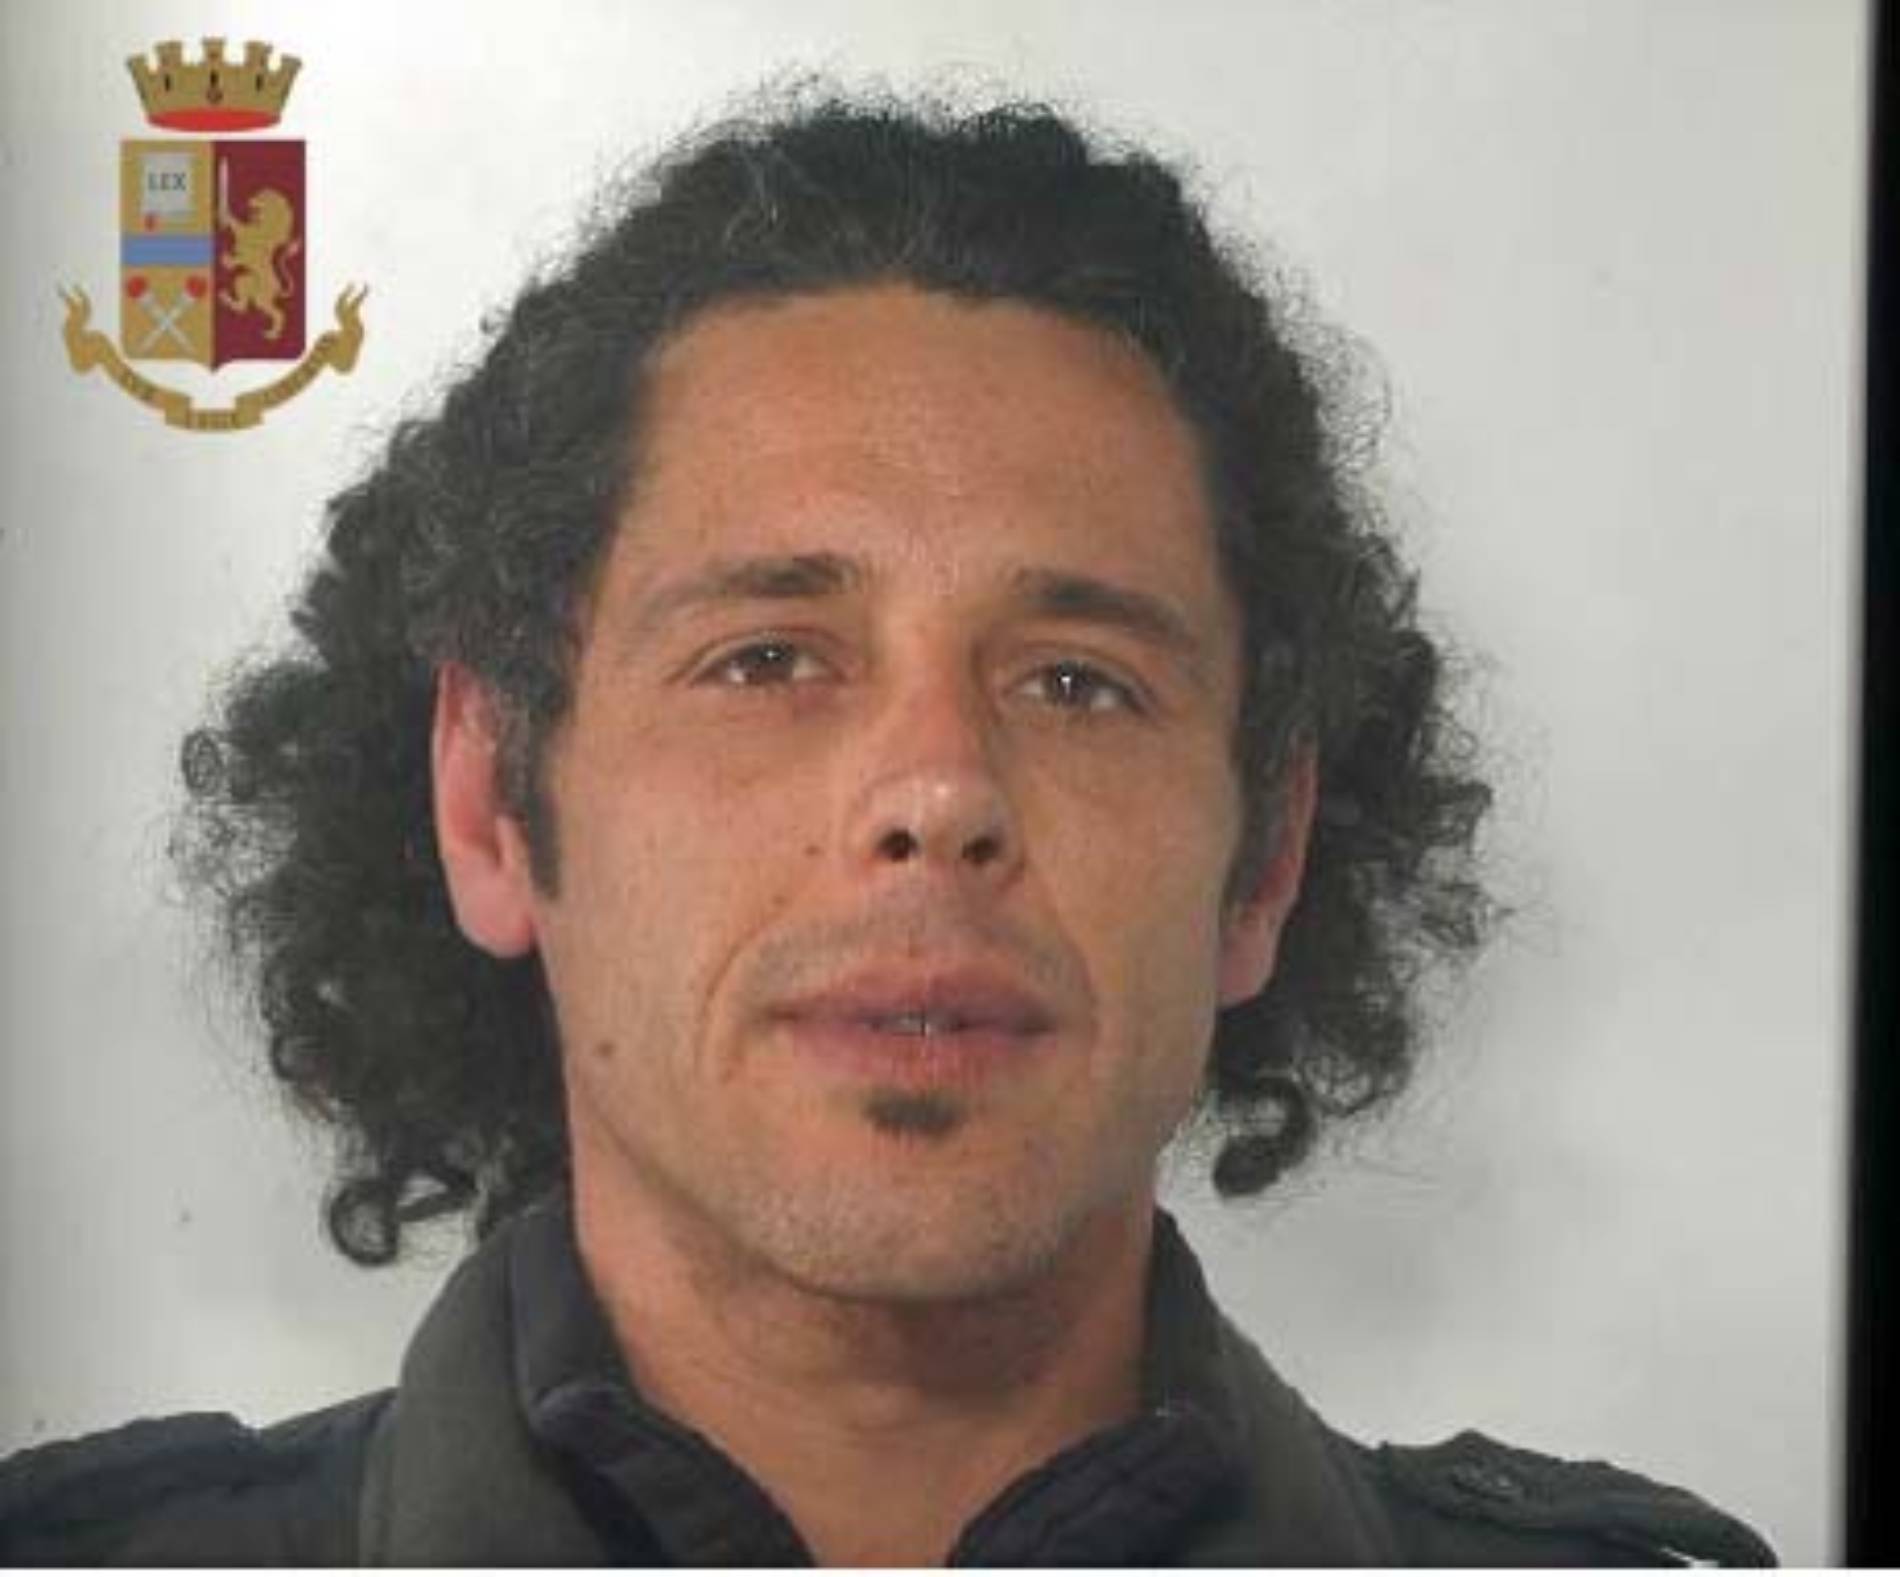 PIAZZA ARMERINA. Arrestato dalla polizia il pietrino Antonino Bevilacqua. Concessi i domiciliari. L’accusa è detenzione di sostanze stupefacenti.